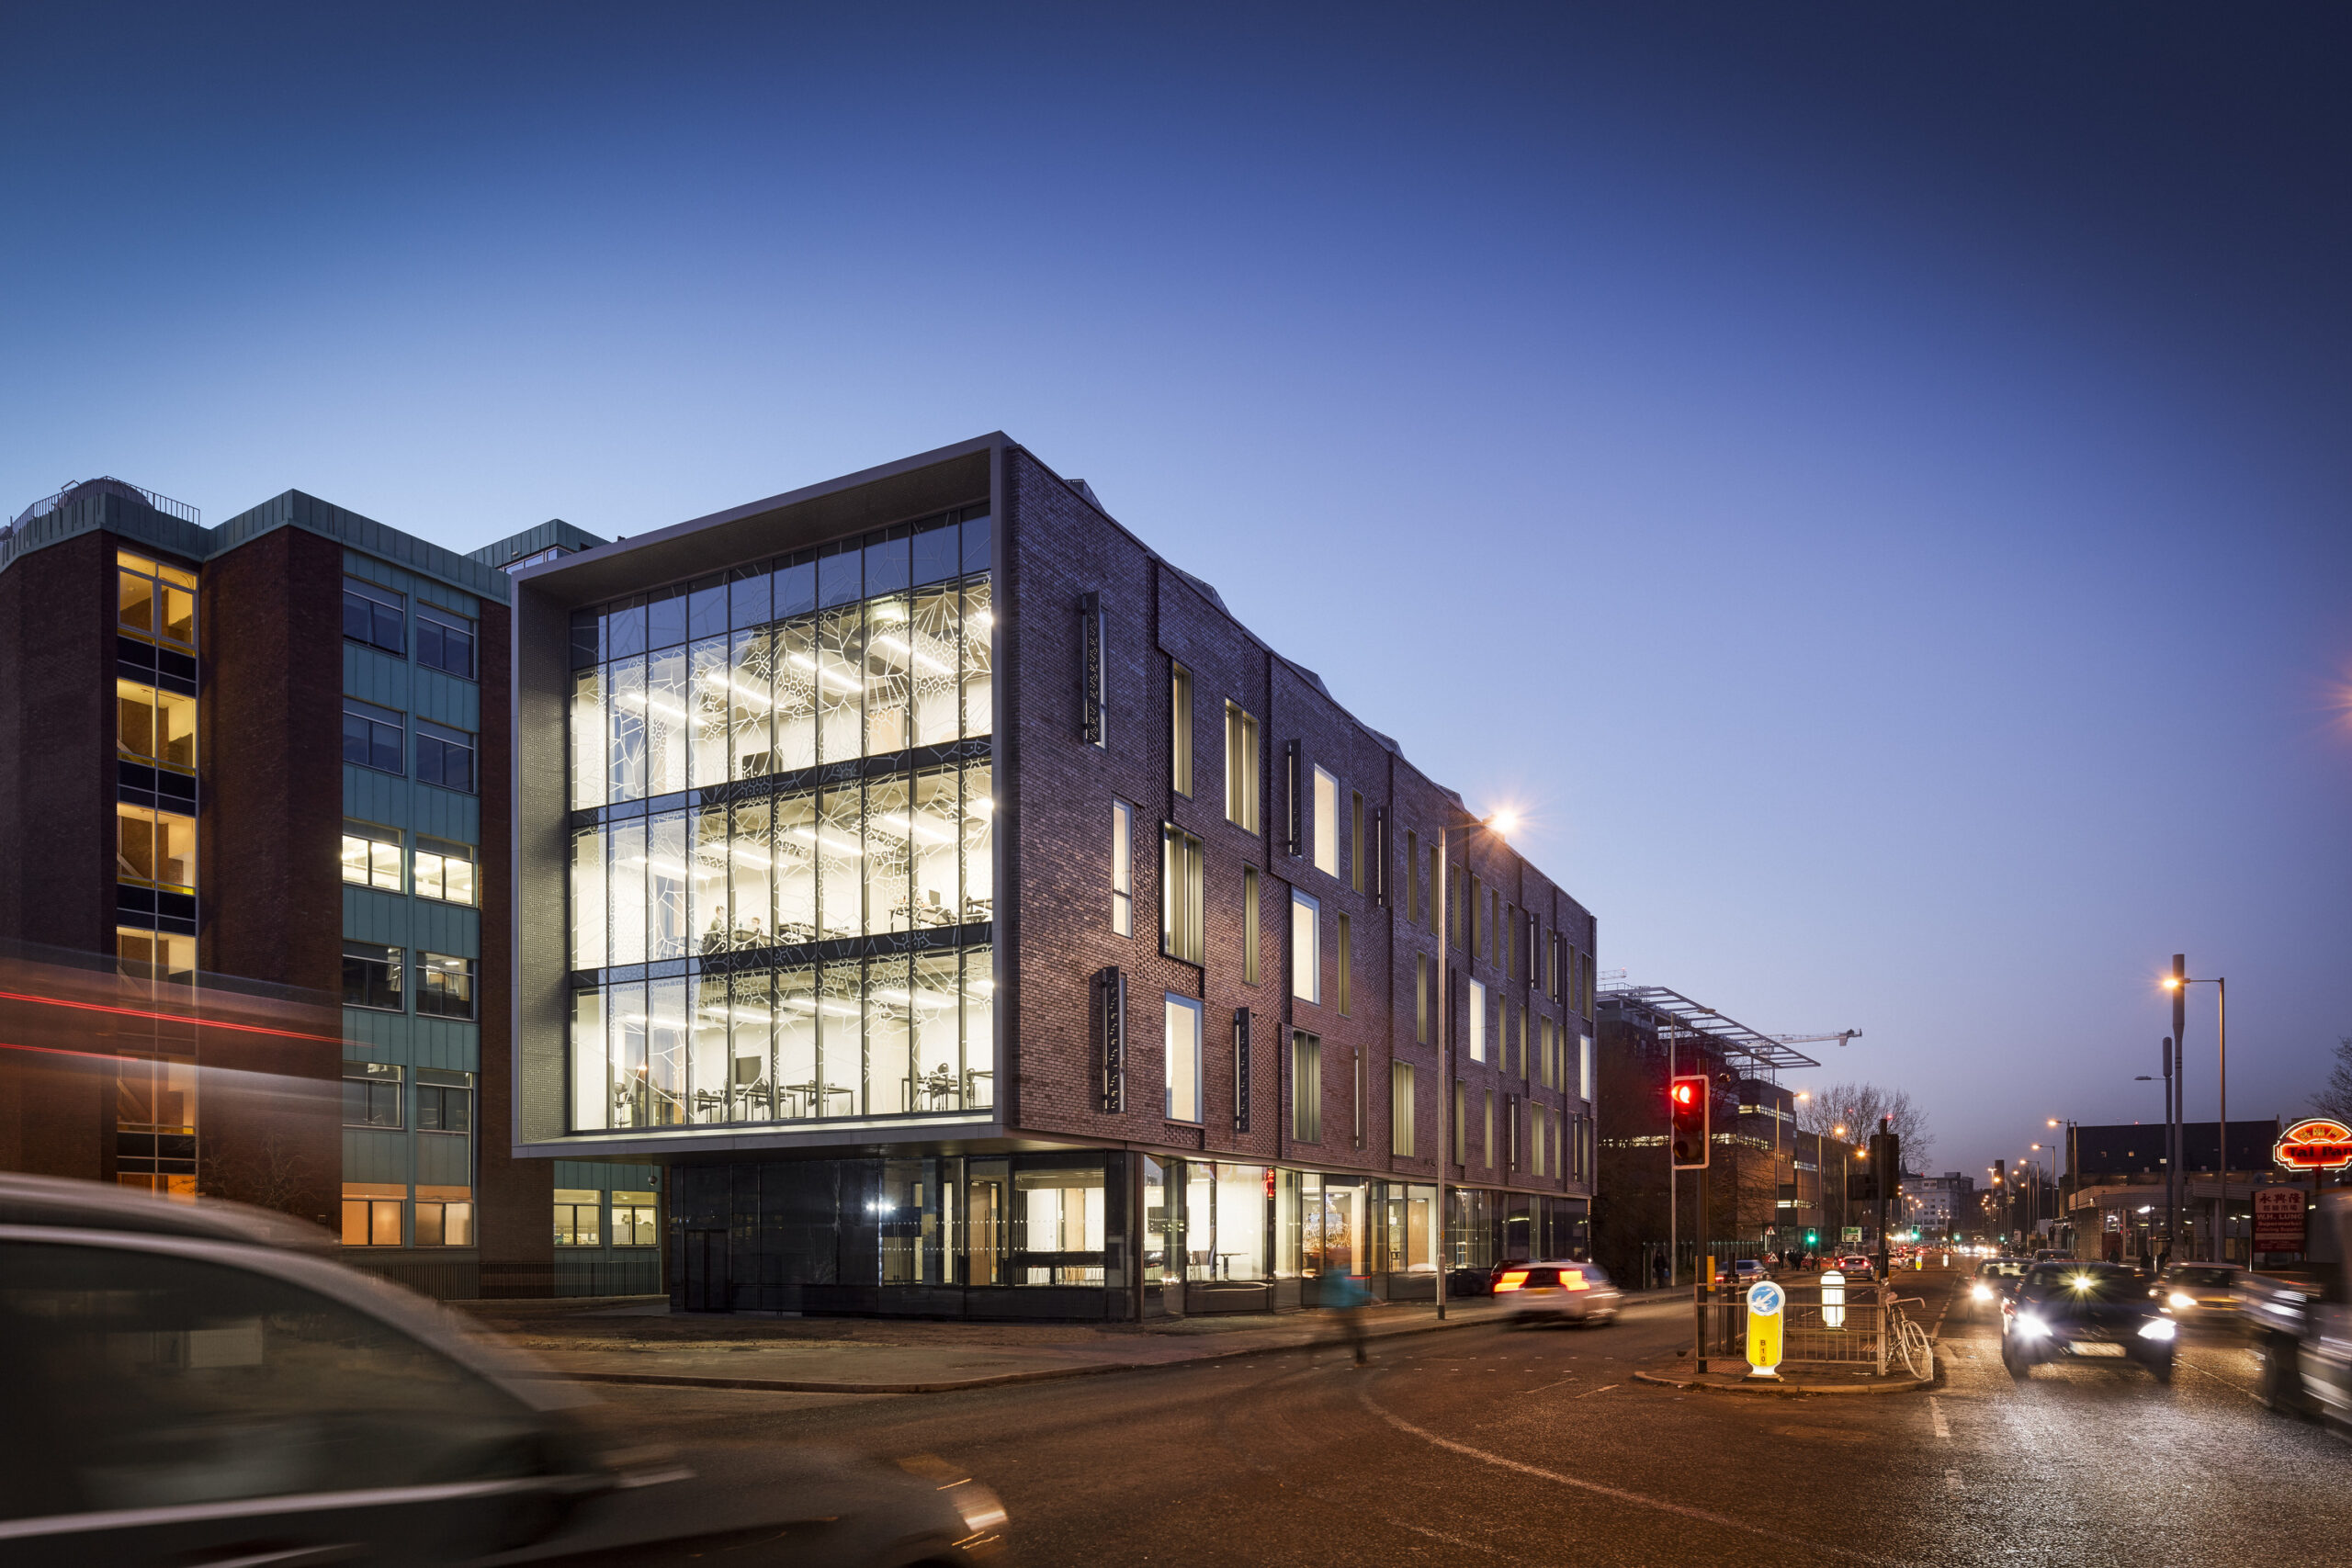 External façade dusk shot at University of Manchester Schuster Annexe-